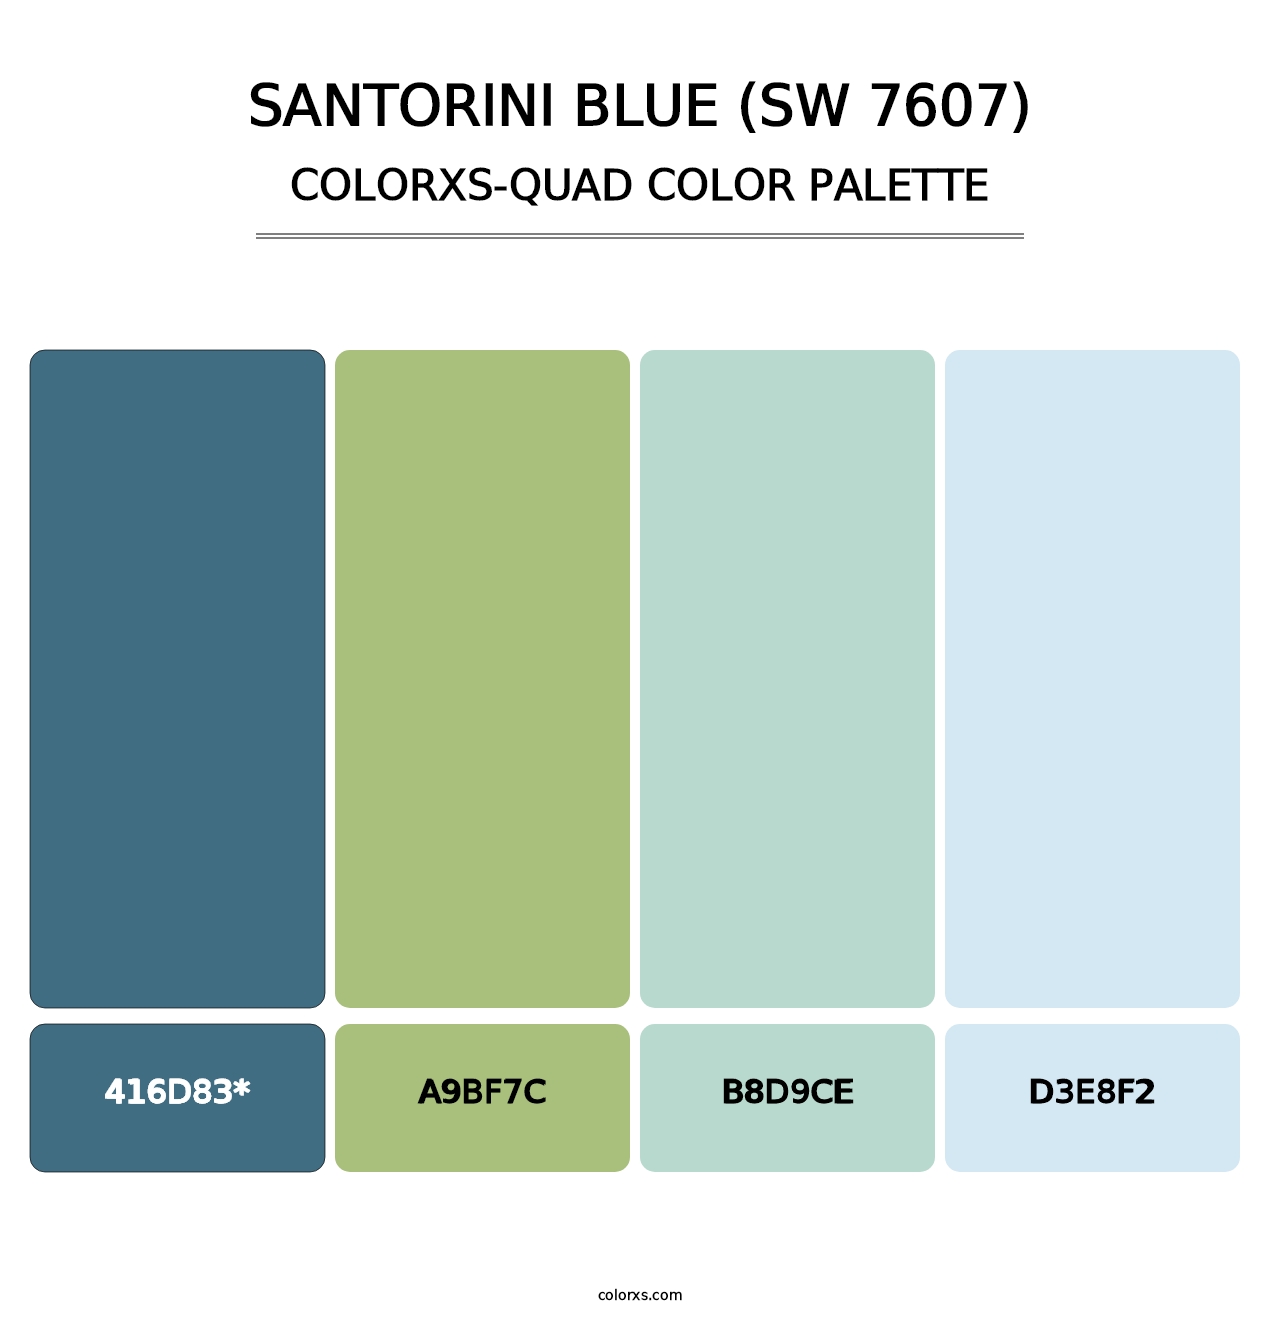 Santorini Blue (SW 7607) - Colorxs Quad Palette